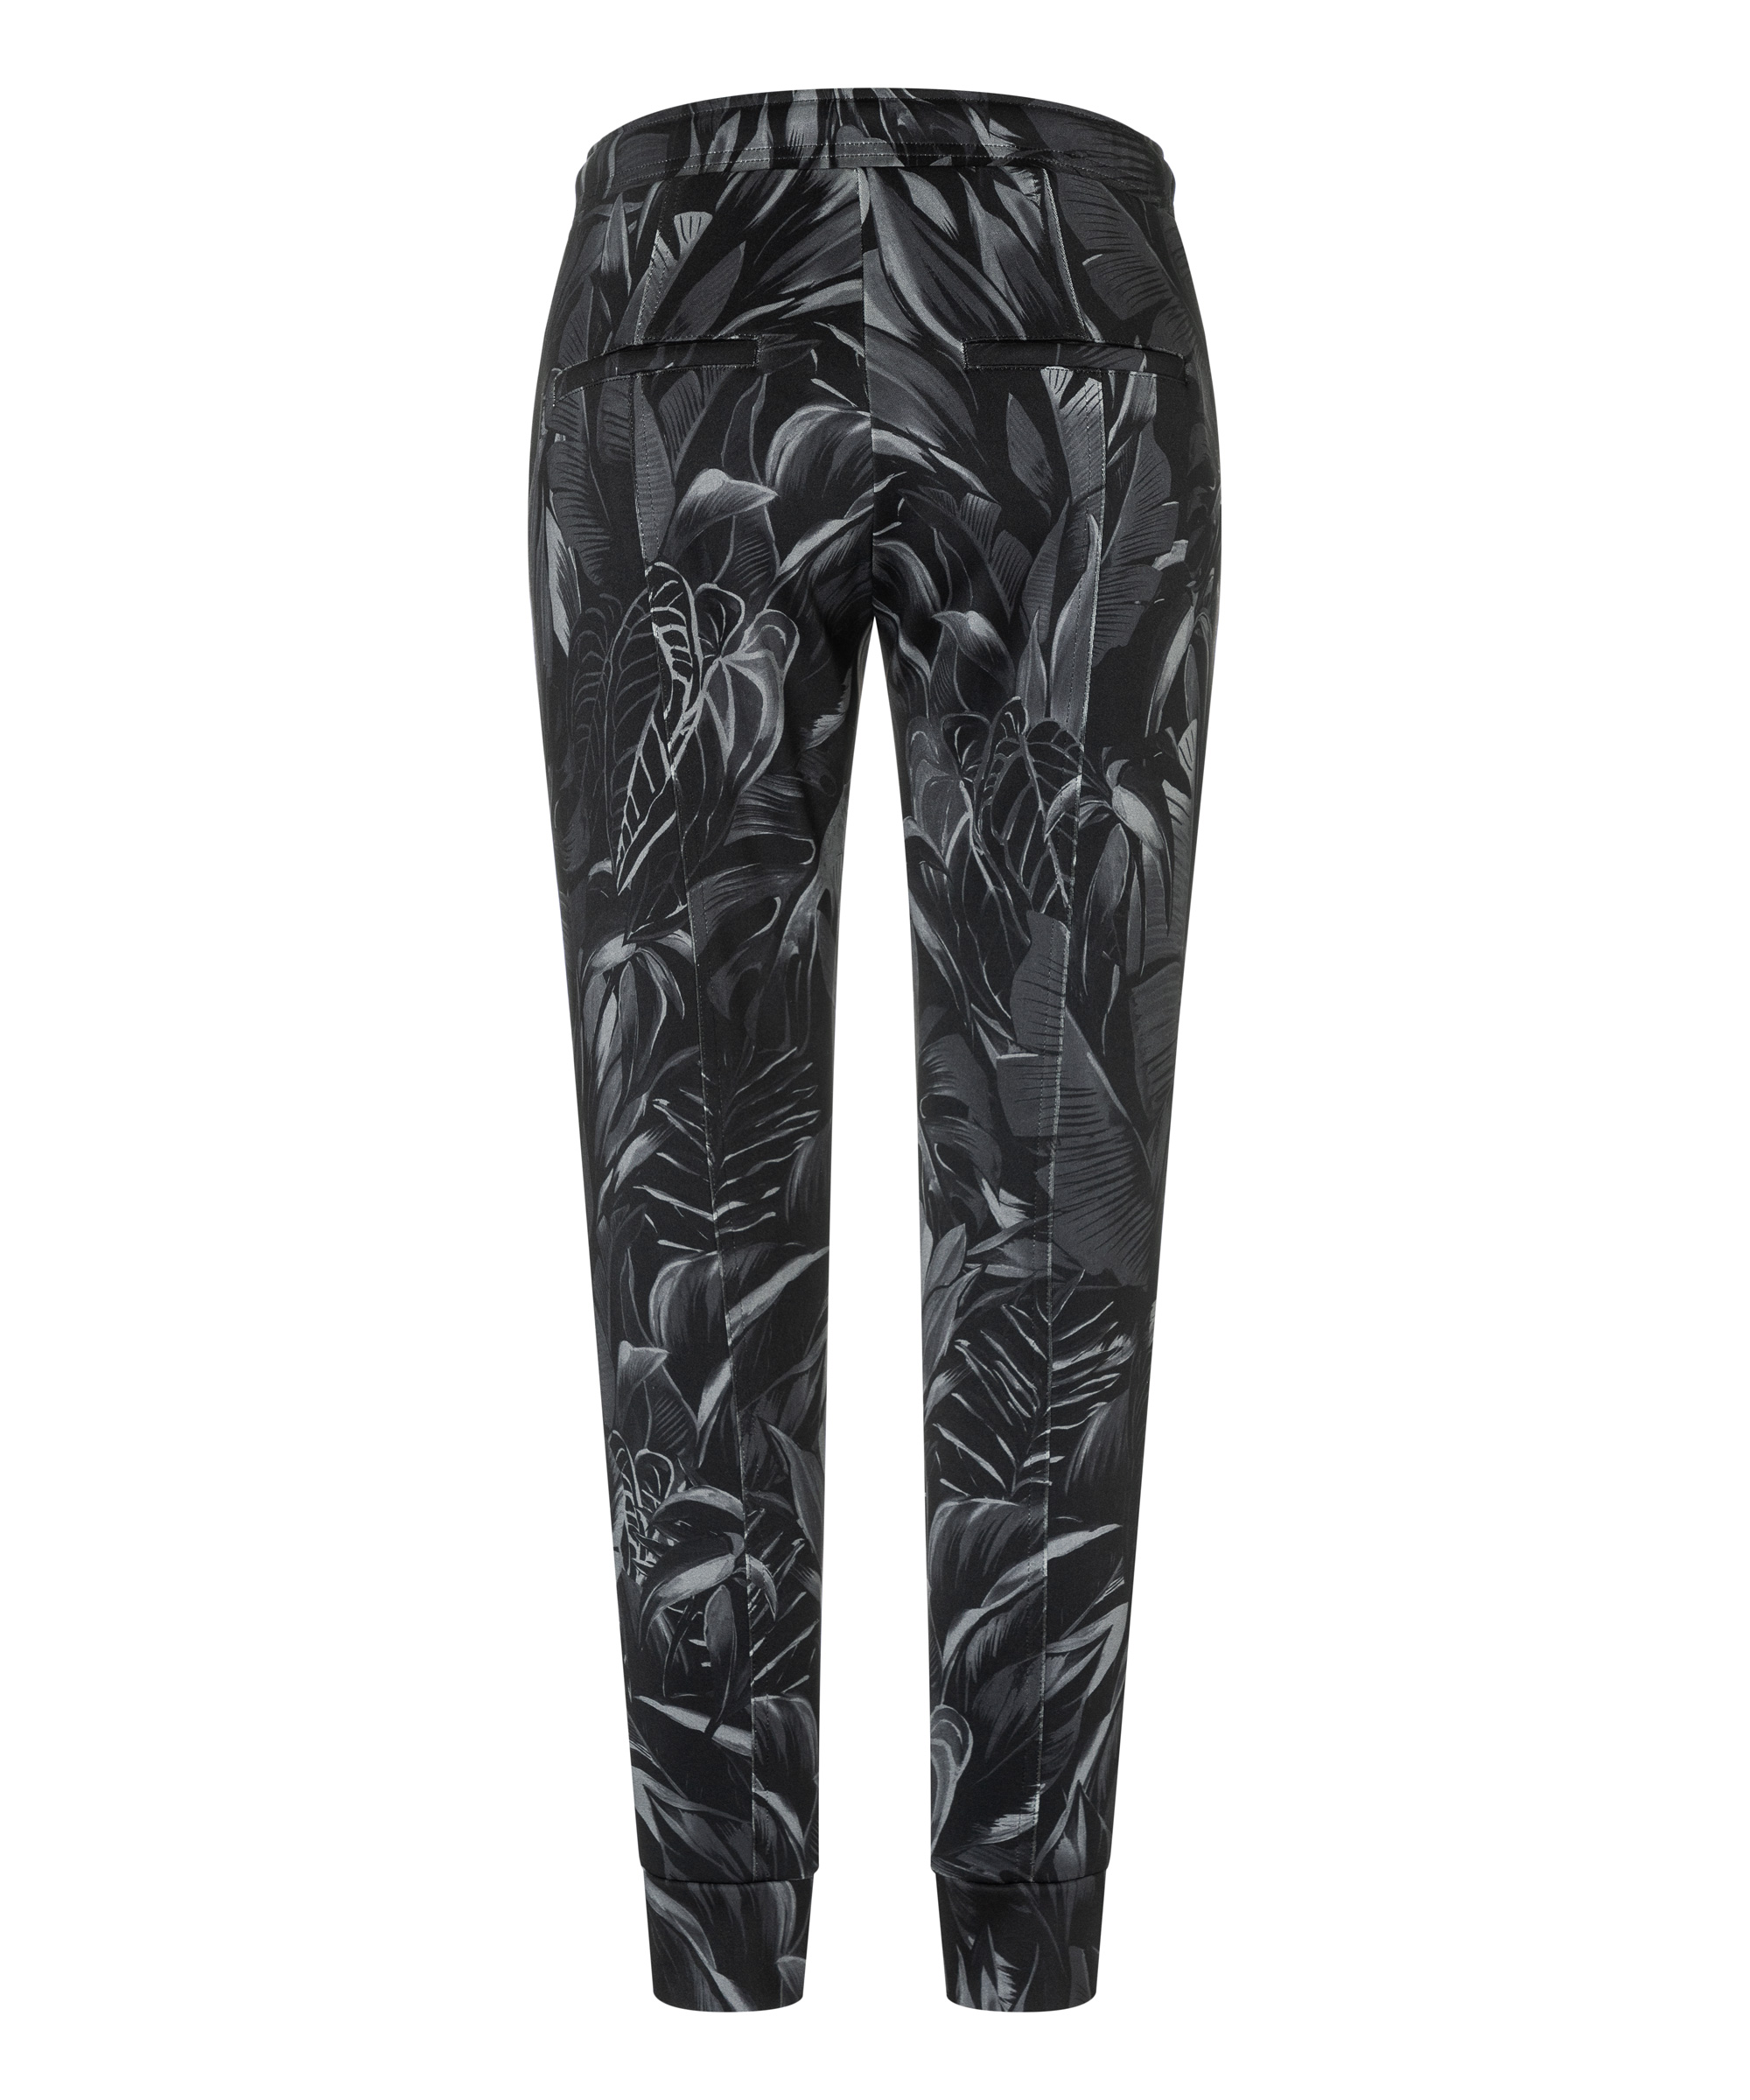 Cambio textile pants JORDEN GREY BLACK LEAVES